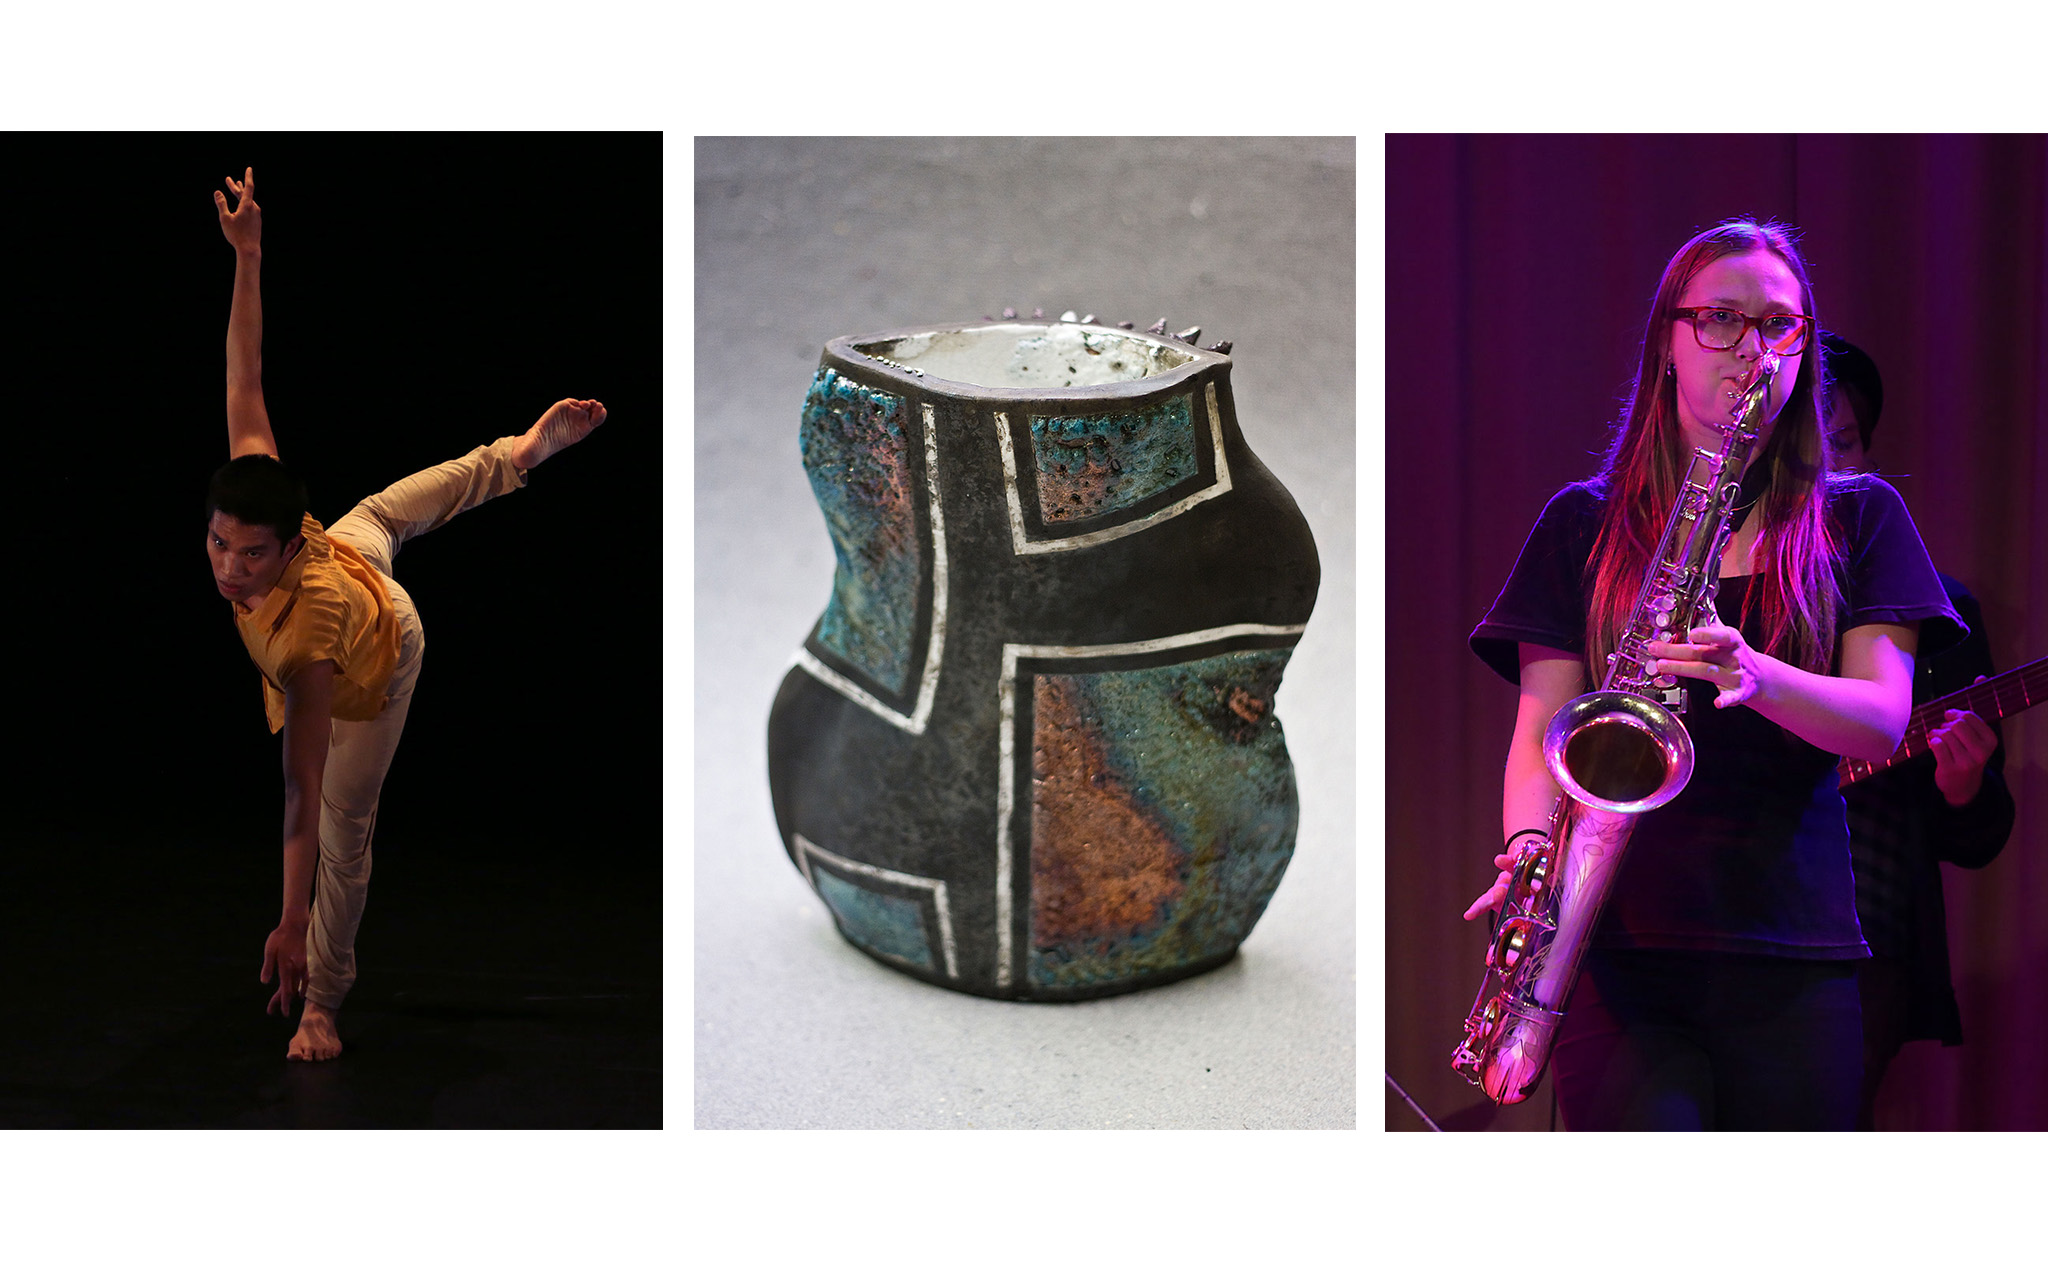 Affischbild i tre delar: en dansare, en vas i keramik och en saxofonspelare.